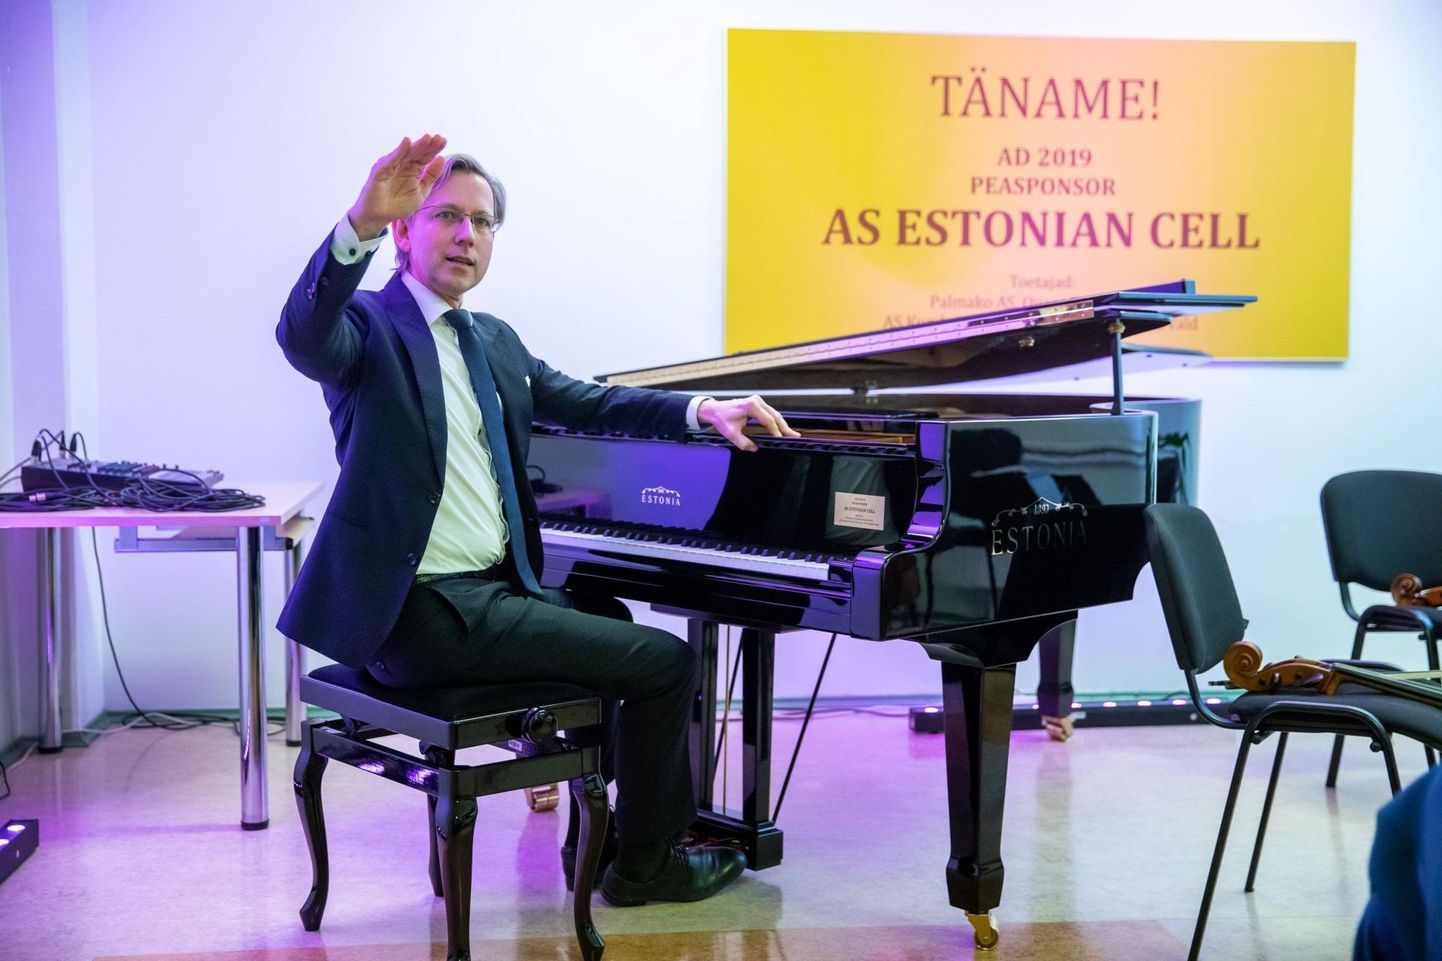 Jaanuari alguses jõudis Kunda muusikakooli klaver. Selle väge ja võimsust näitab Estonia klaverivabriku juht Indrek Laul.
Nüüd plaanib vald veel ühe pilli soetada.